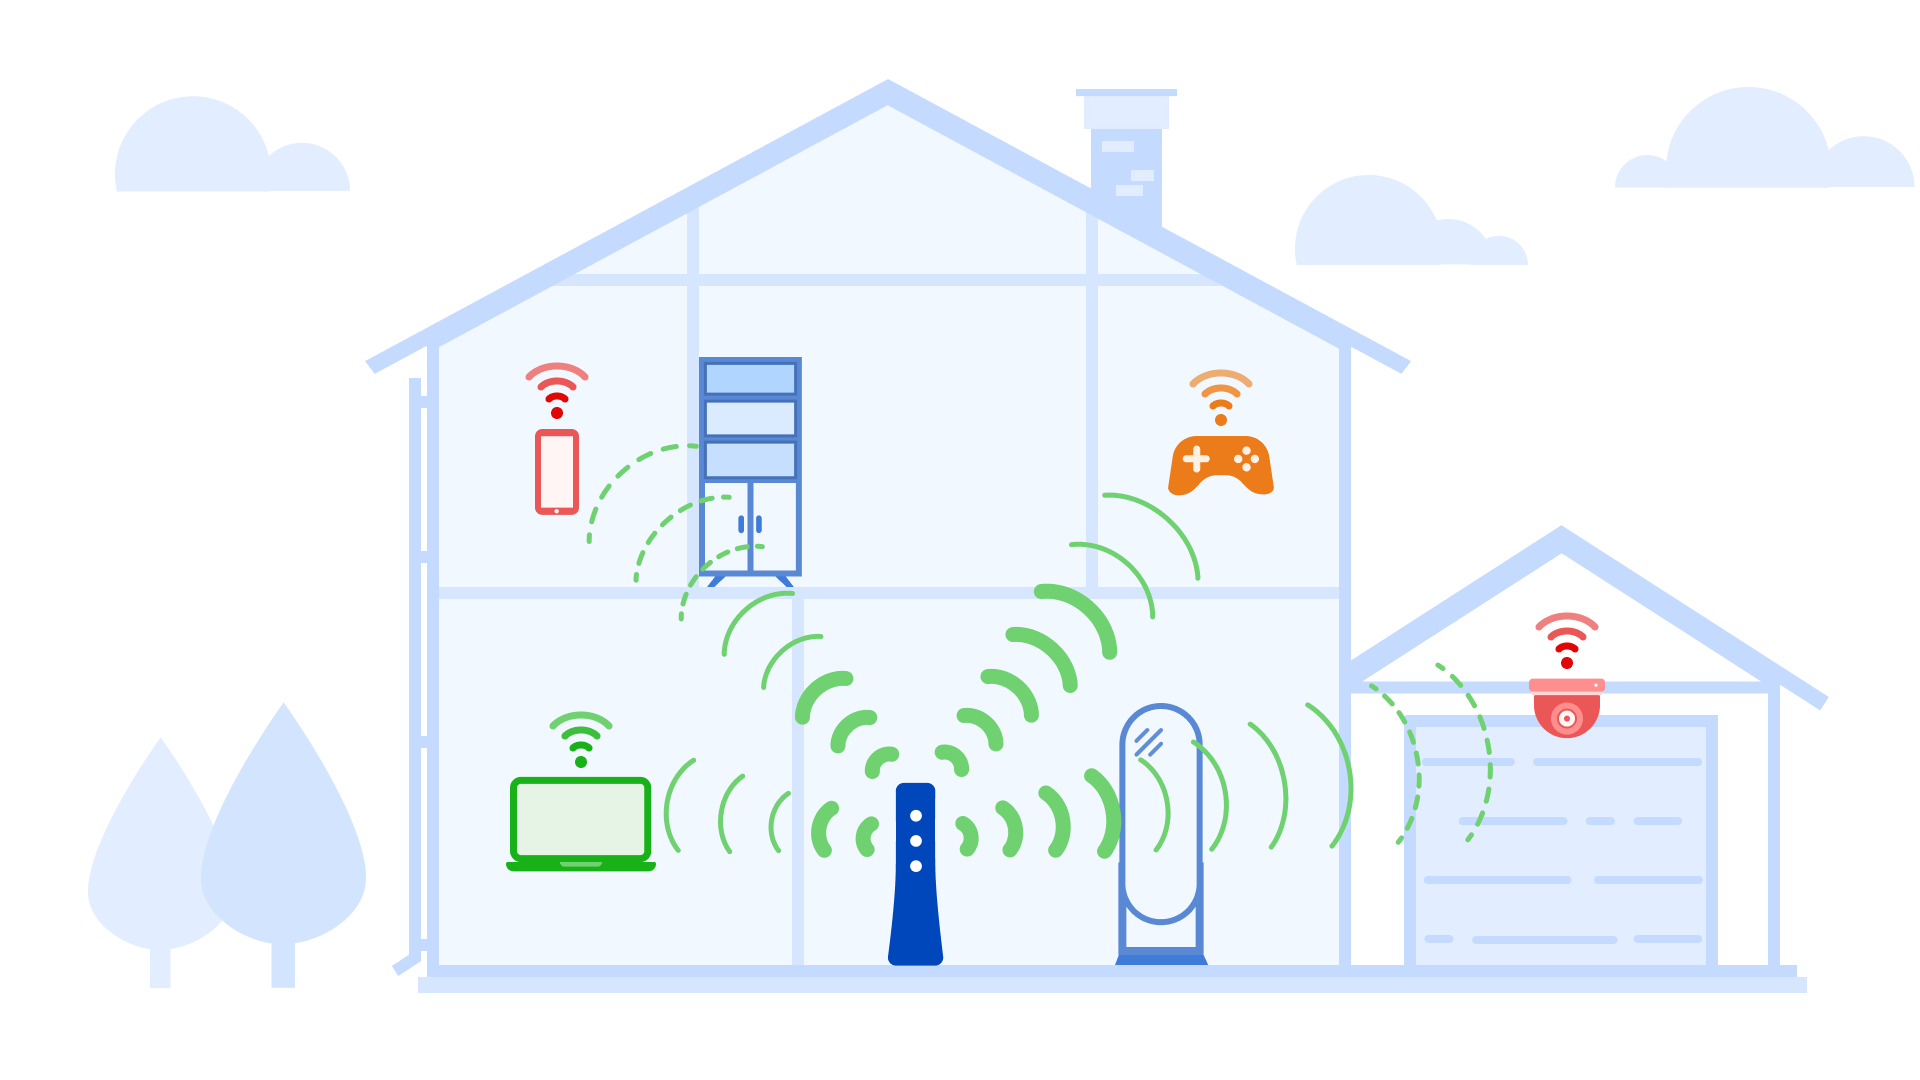 Ilustración de que las paredes, los suelos y la distancia debilitan la intensidad de la señal WiFi